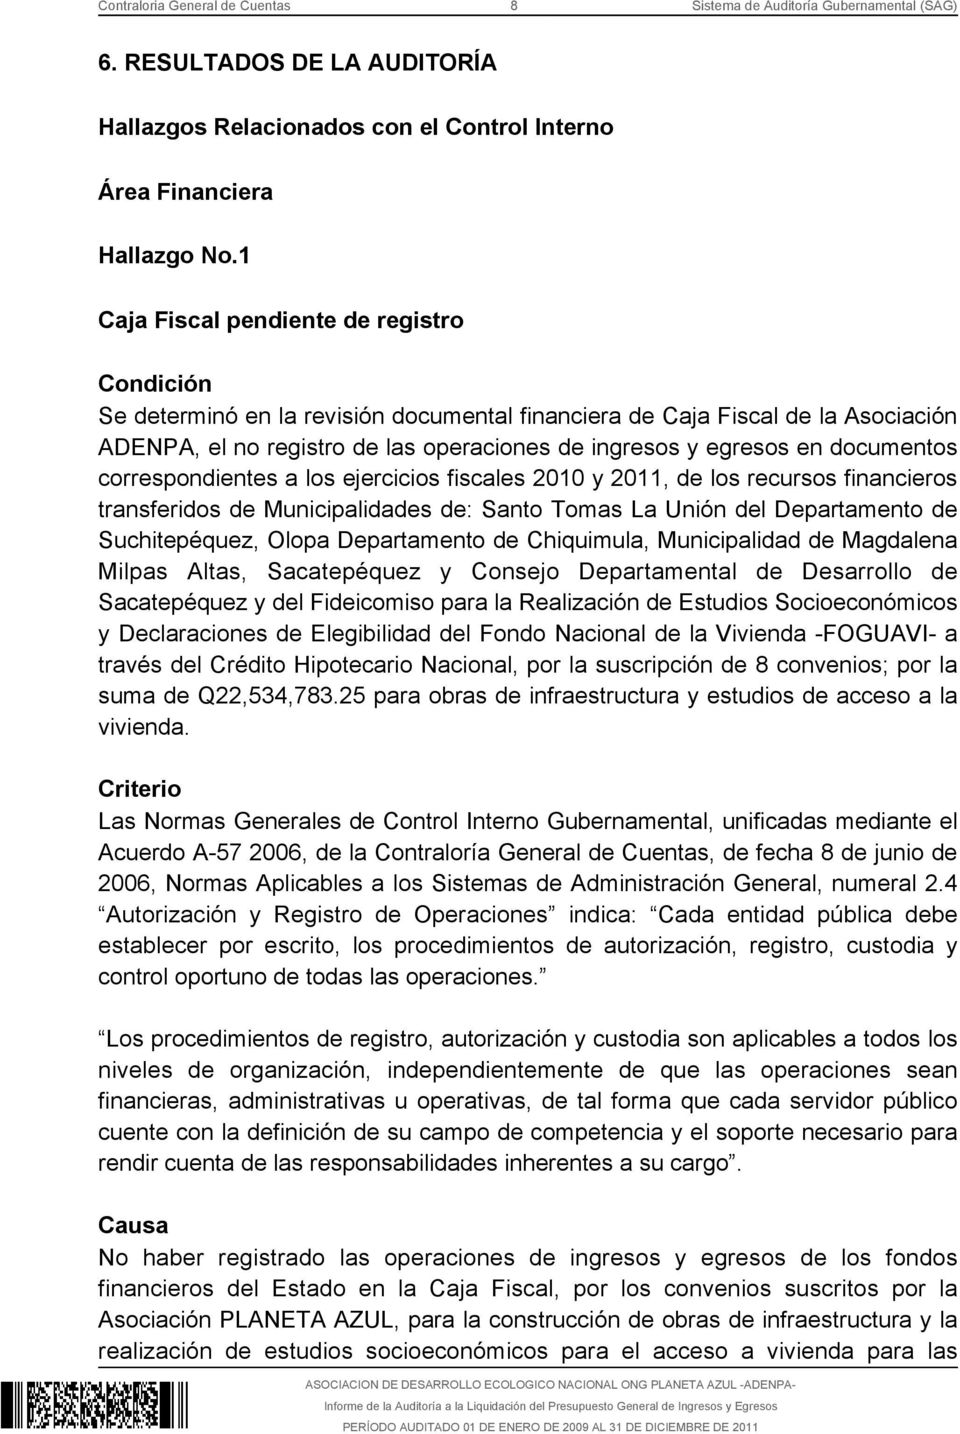 documentos correspondientes a los ejercicios fiscales 2010 y 2011, de los recursos financieros transferidos de Municipalidades de: Santo Tomas La Unión del Departamento de Suchitepéquez, Olopa